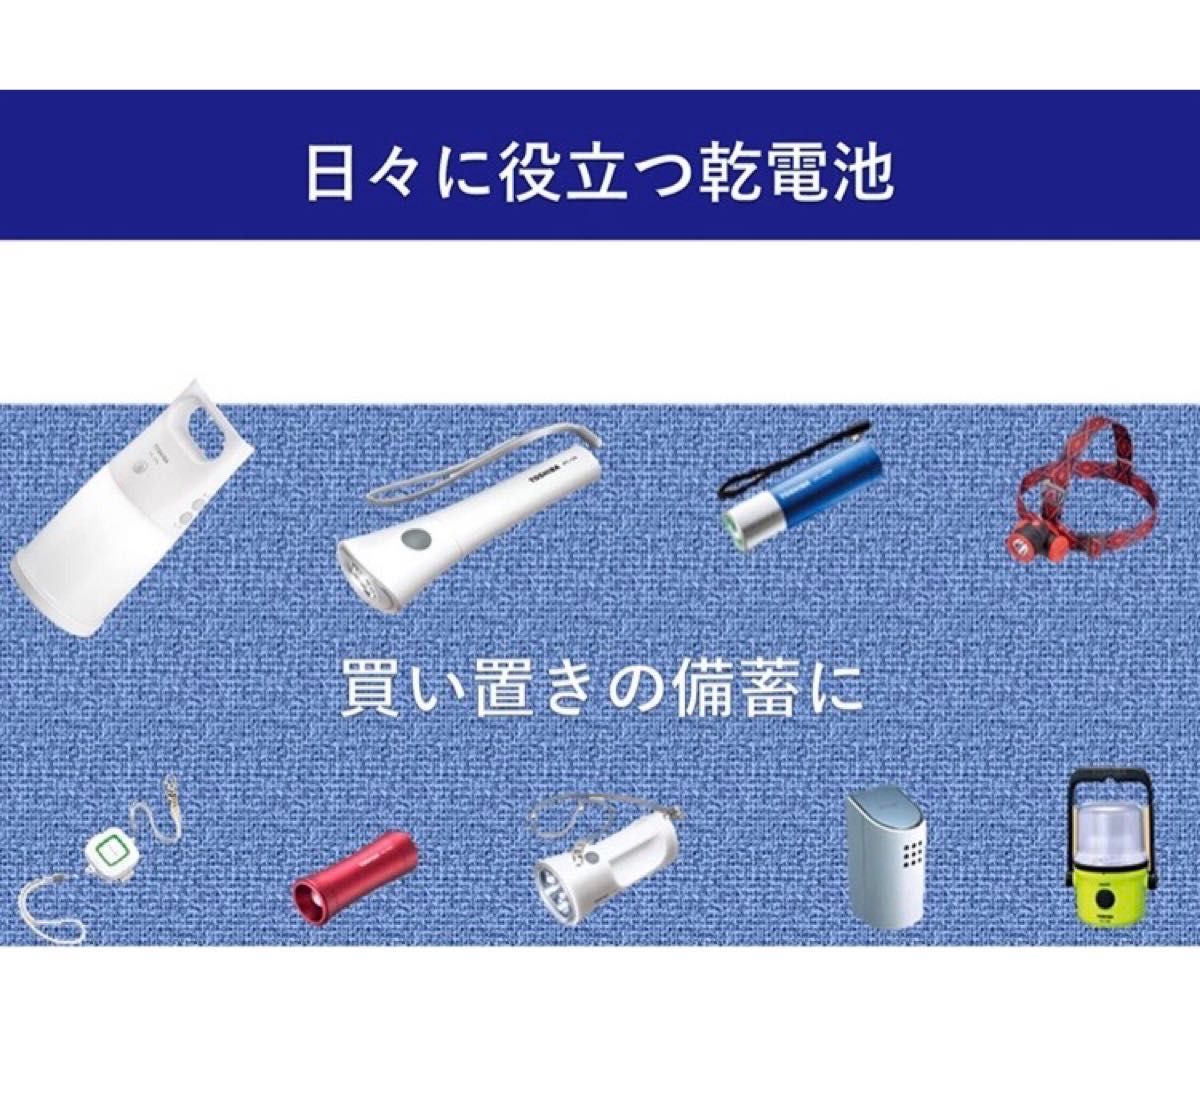 東芝 アルカリ乾電池 単3形 TOSHIBA乾電池 単3 電池 単三 クーポン 防災 備蓄 